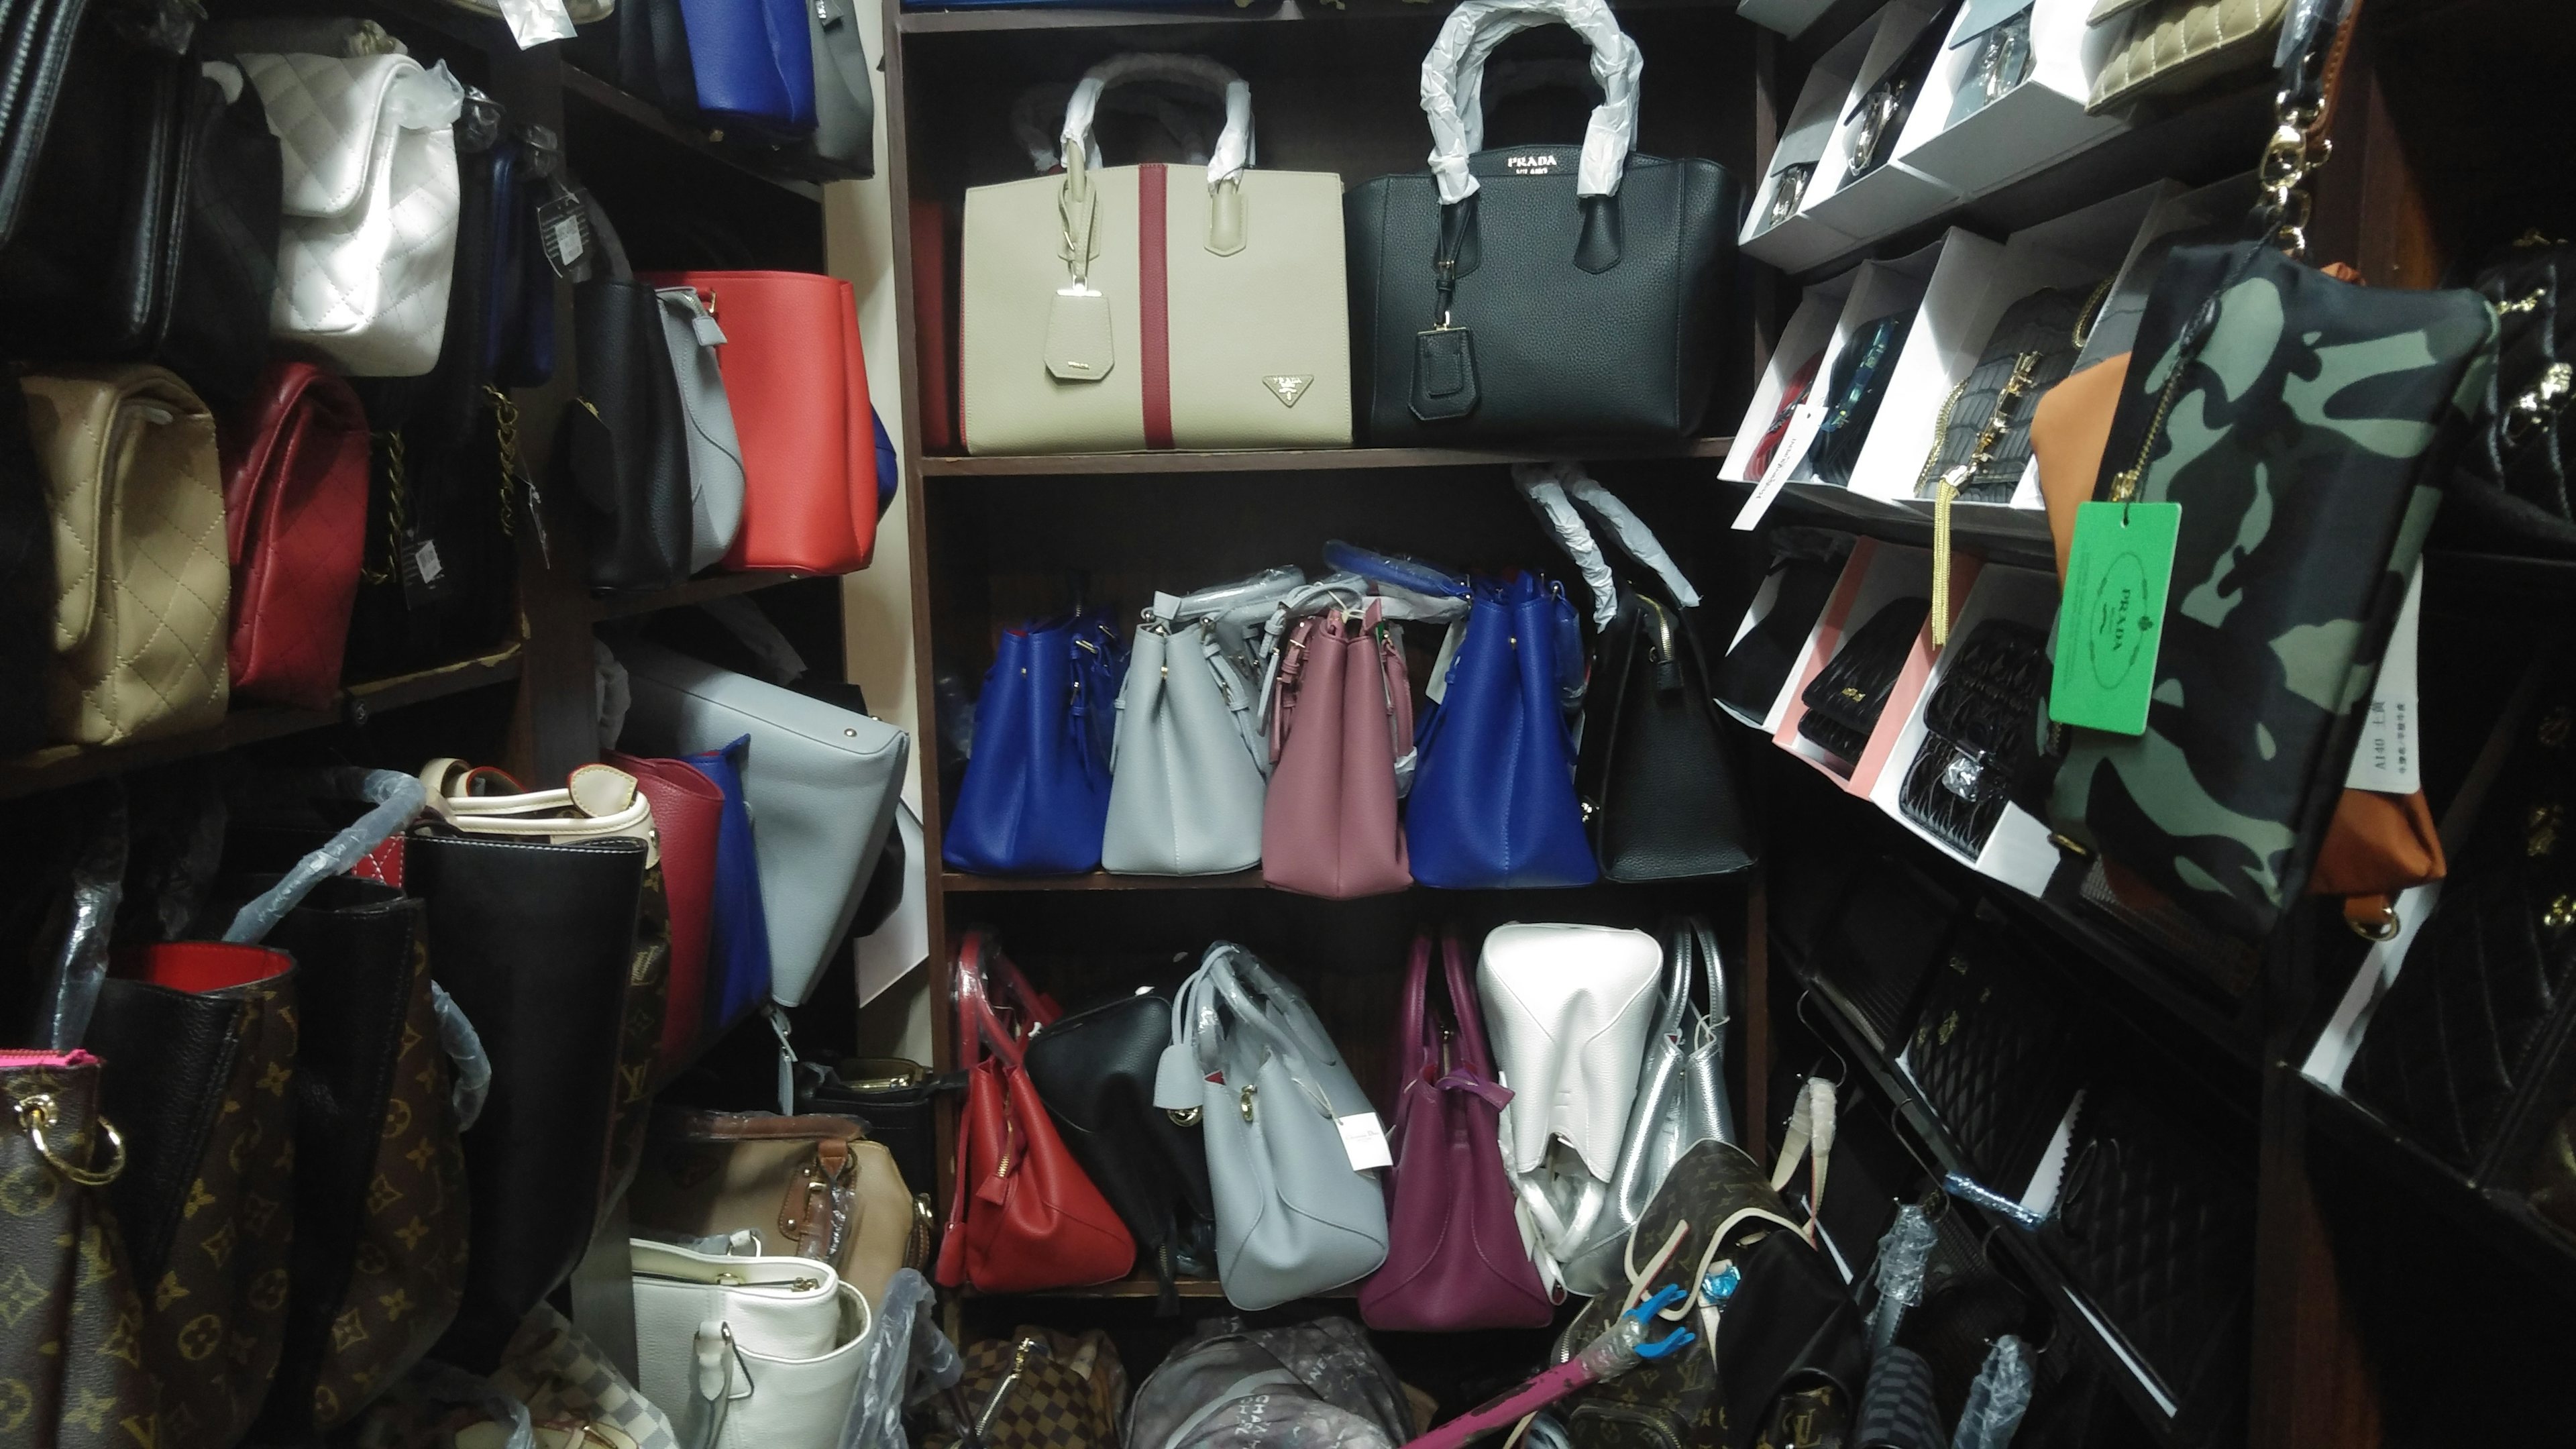 Fake luxury bags for sale at Han City in Shanghai. (Veronica Hernandez)